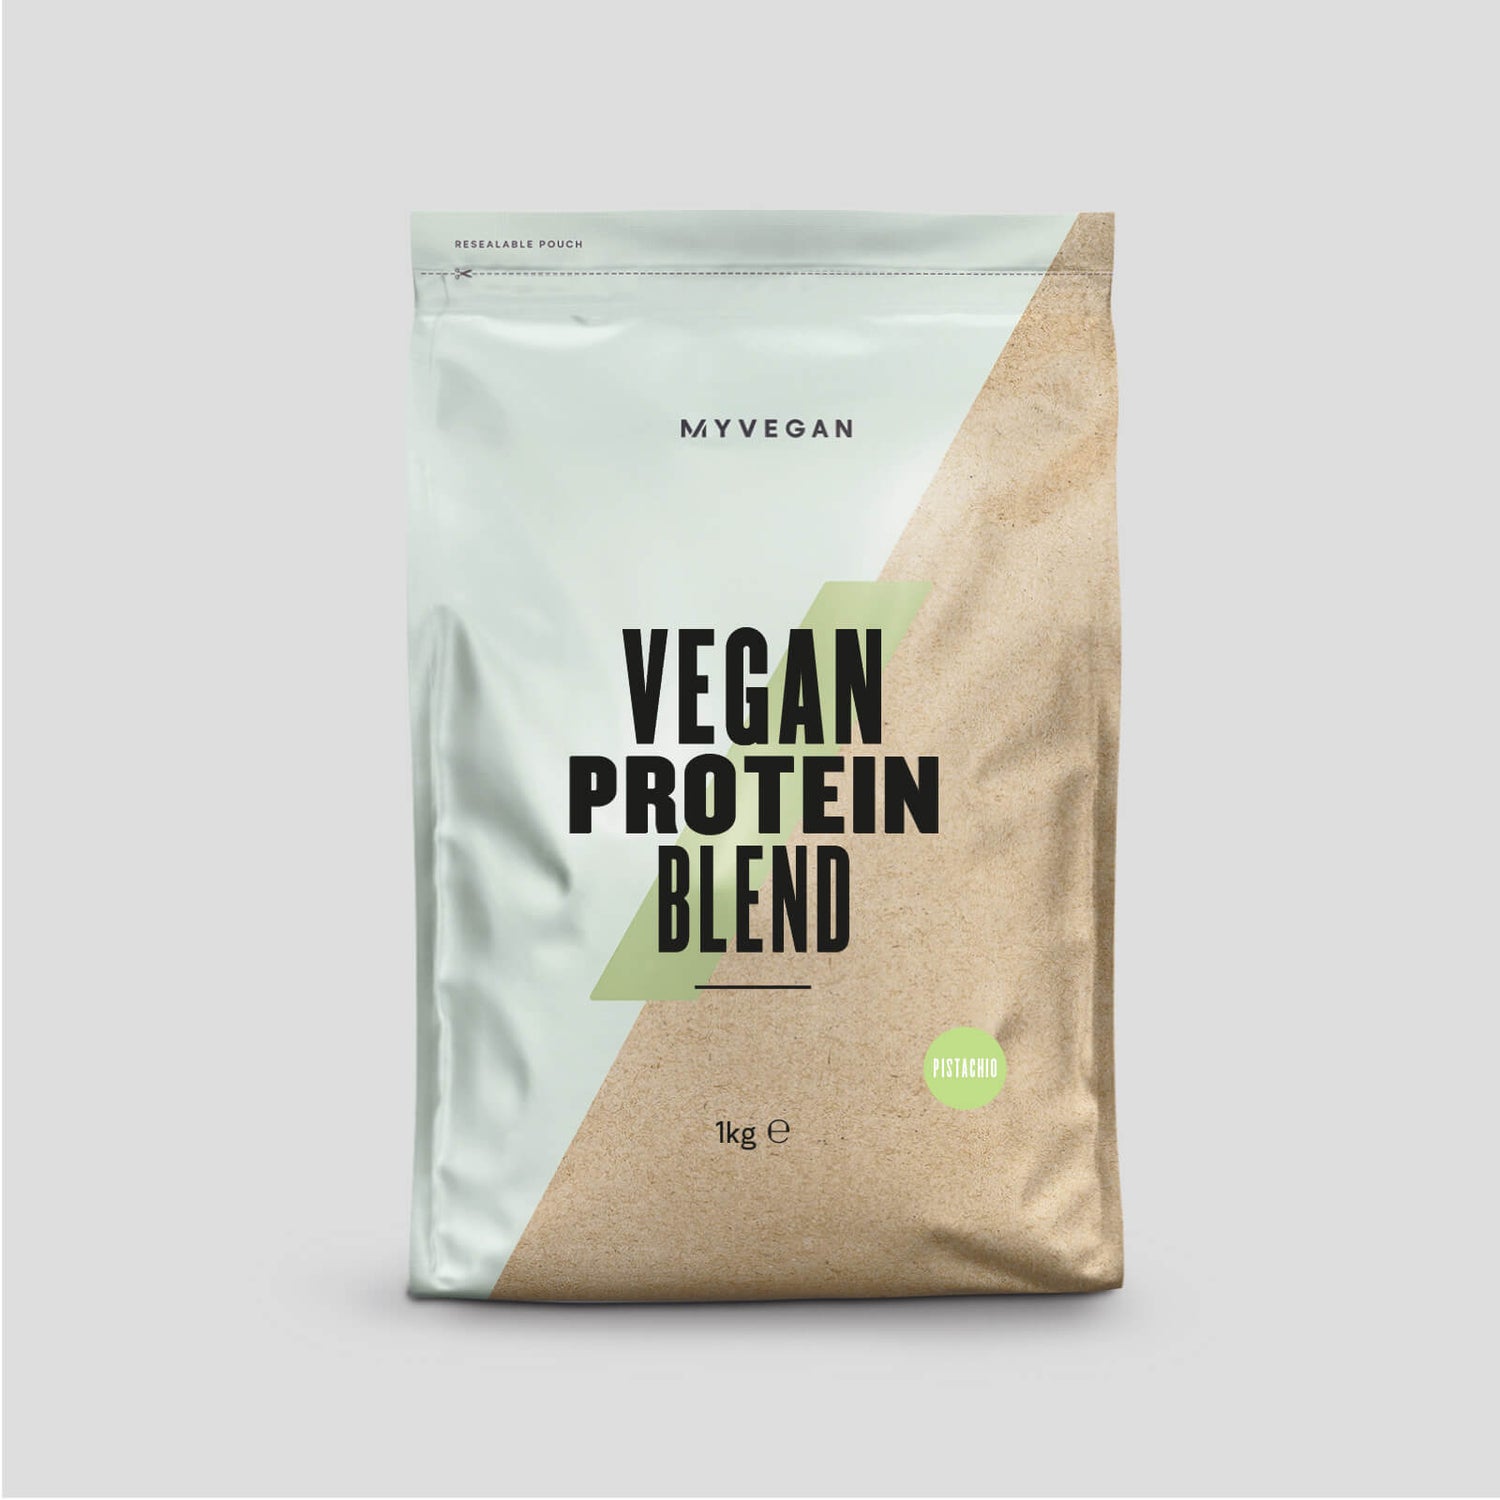 Myvegan Vegan Protein Blend, Impact Week 2, Pistachio (ALT)